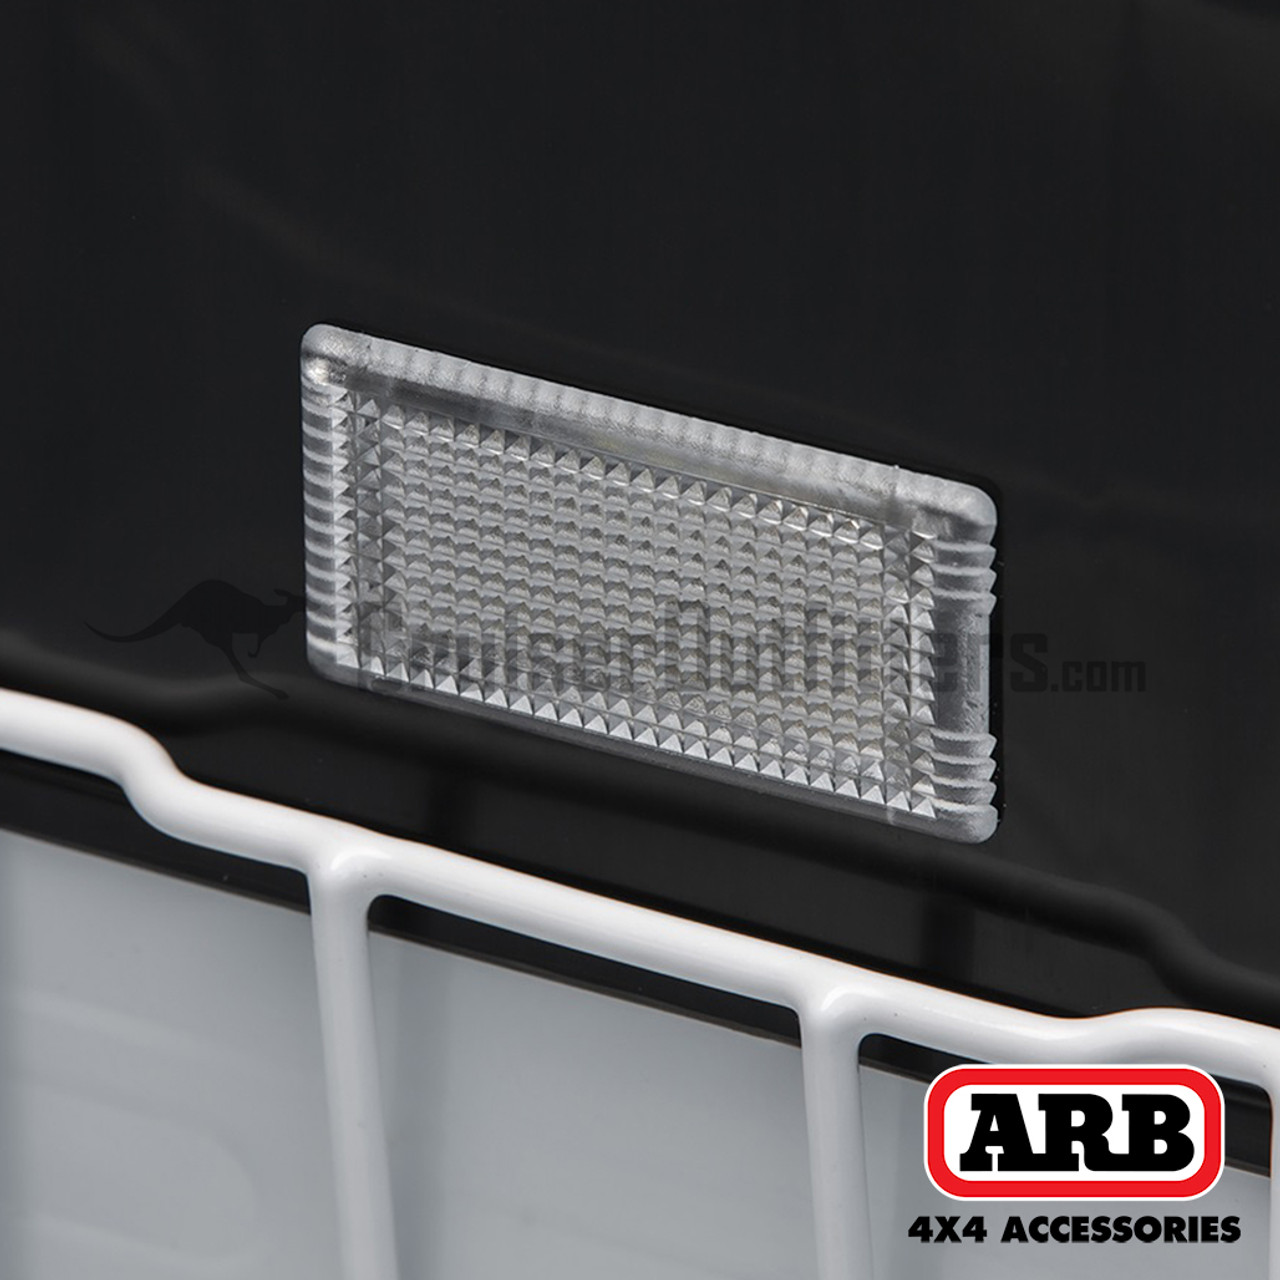 ARB Classic Series II Fridge Freezer - 82QT (ARB10801782)